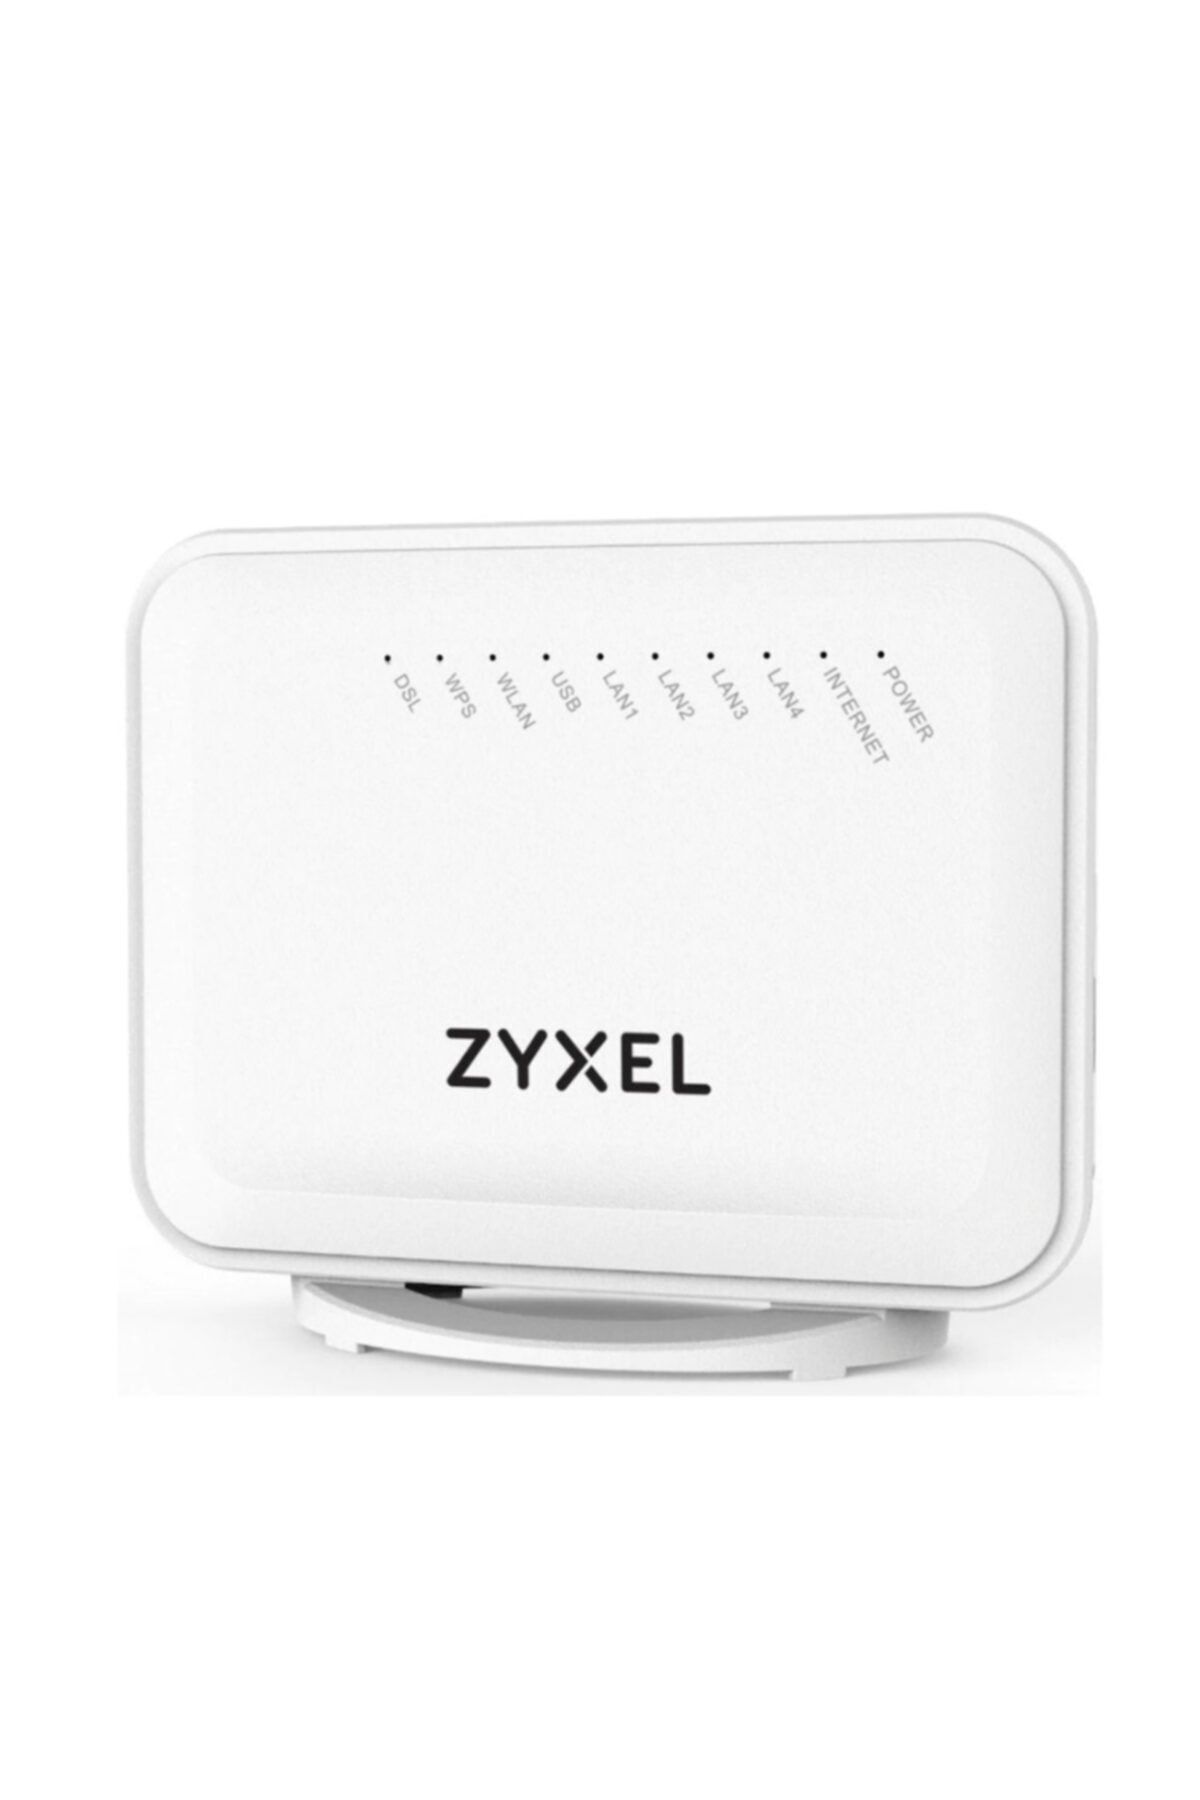 Zyxel Vmg1312-t20b 2.4 Ghz 300mbps Wi-fi Vdsl2 Adsl2+ Modem Router